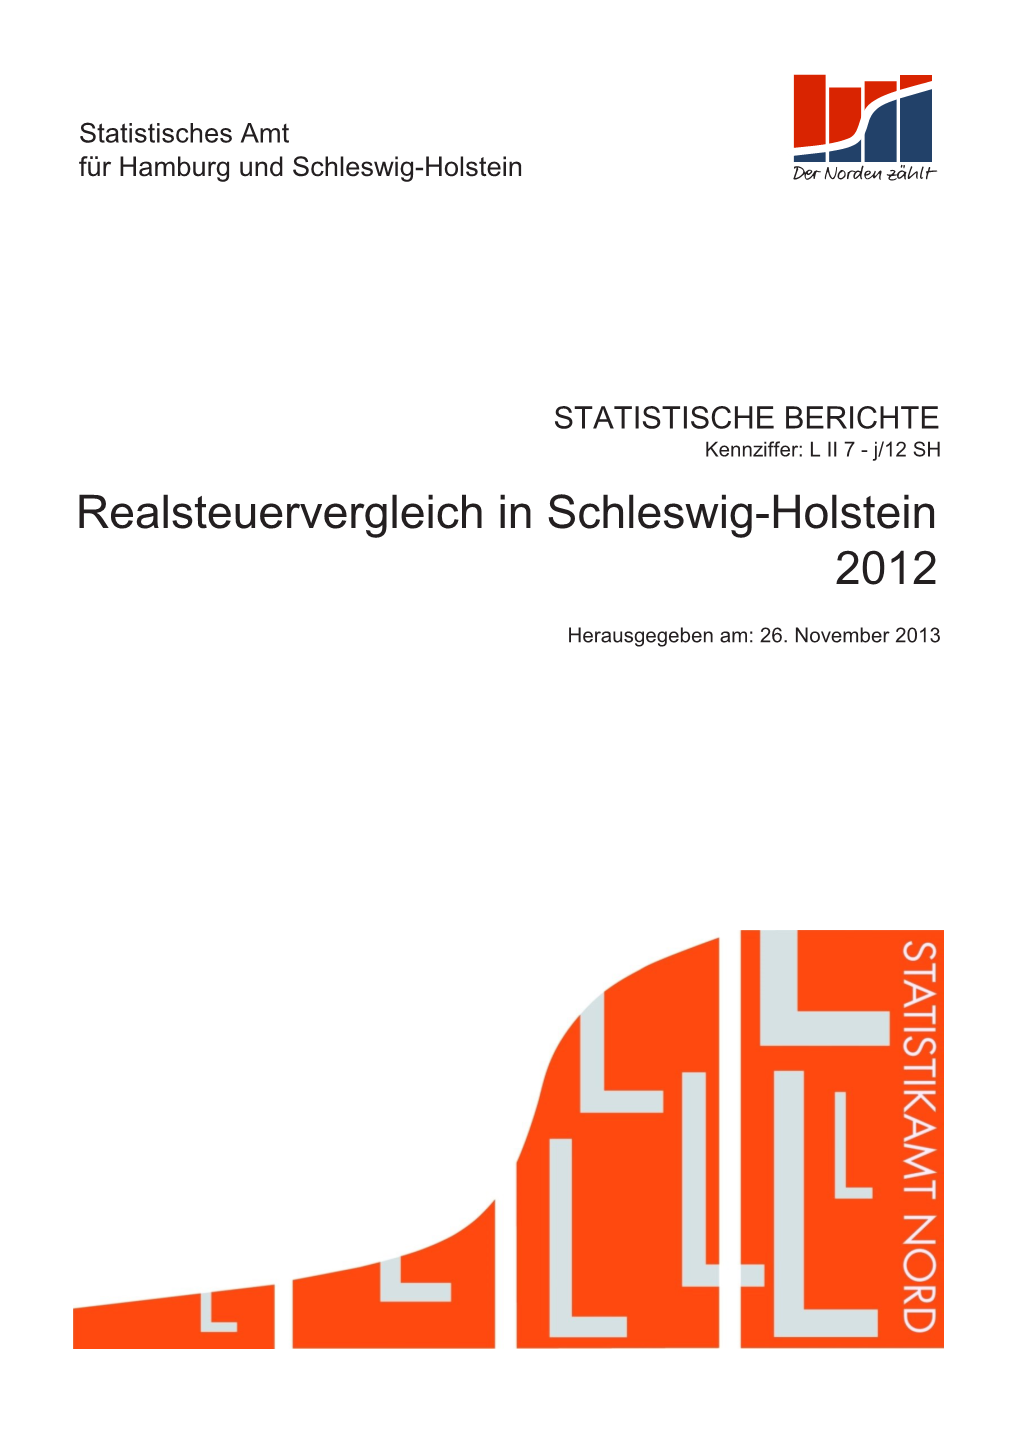 2012 Realsteuervergleich in Schleswig-Holstein